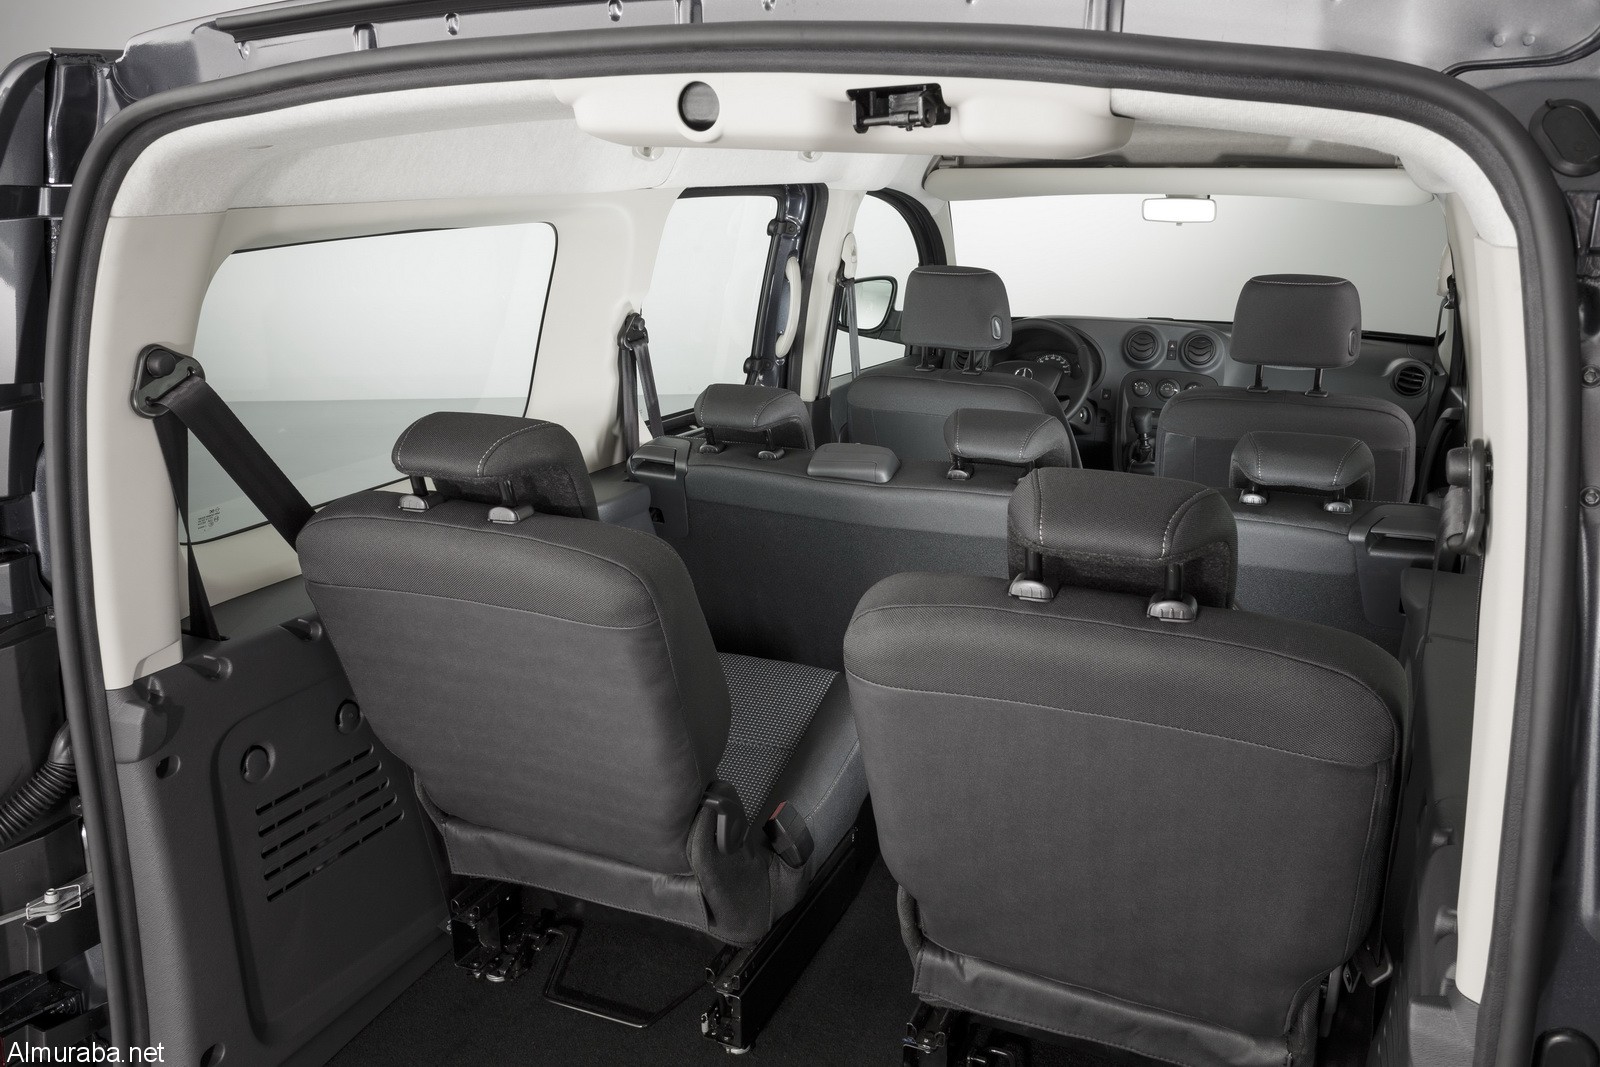 Citan 111 CDI, Crewbus extra-long, 7 seats, tenorit grey metallic